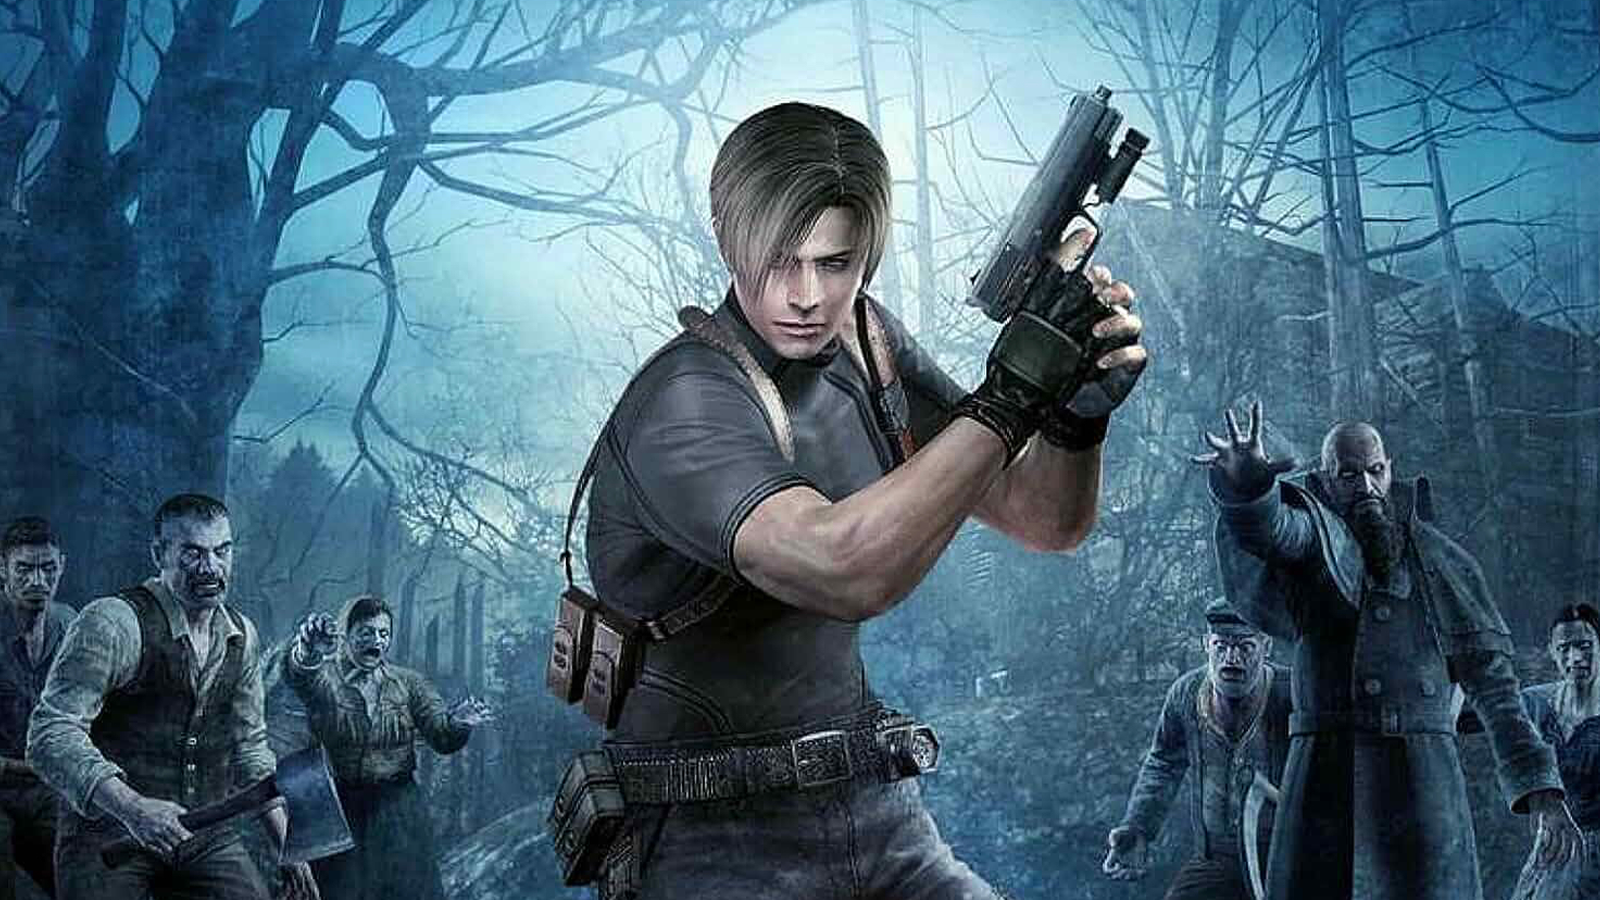 Leon in the Resident Evil 4 poster